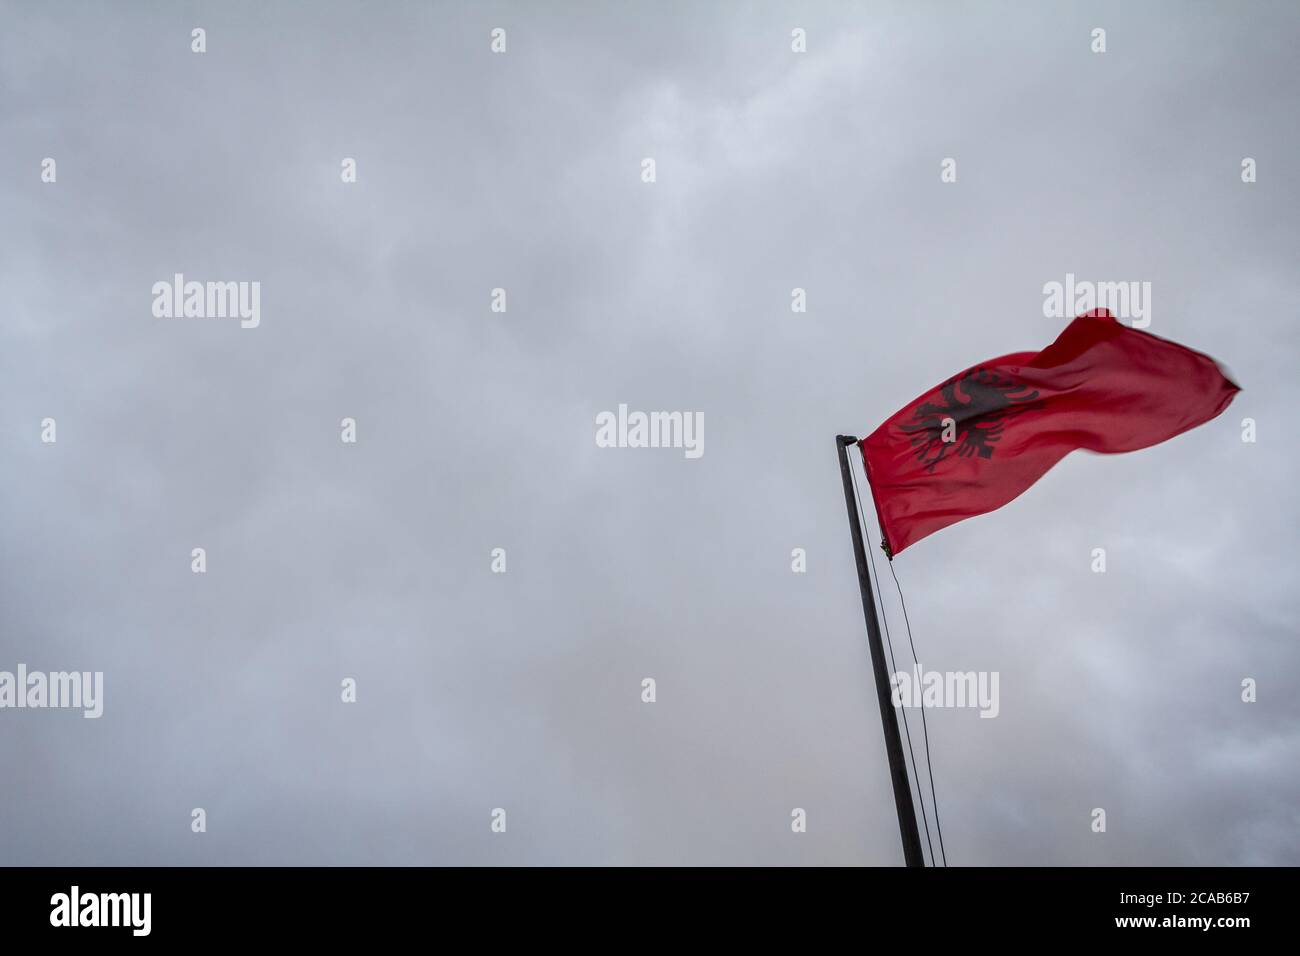 Albanian Flag, Flamuri Shqiptar Hand Created on a Hang/Free Frame 33 x 25  cm